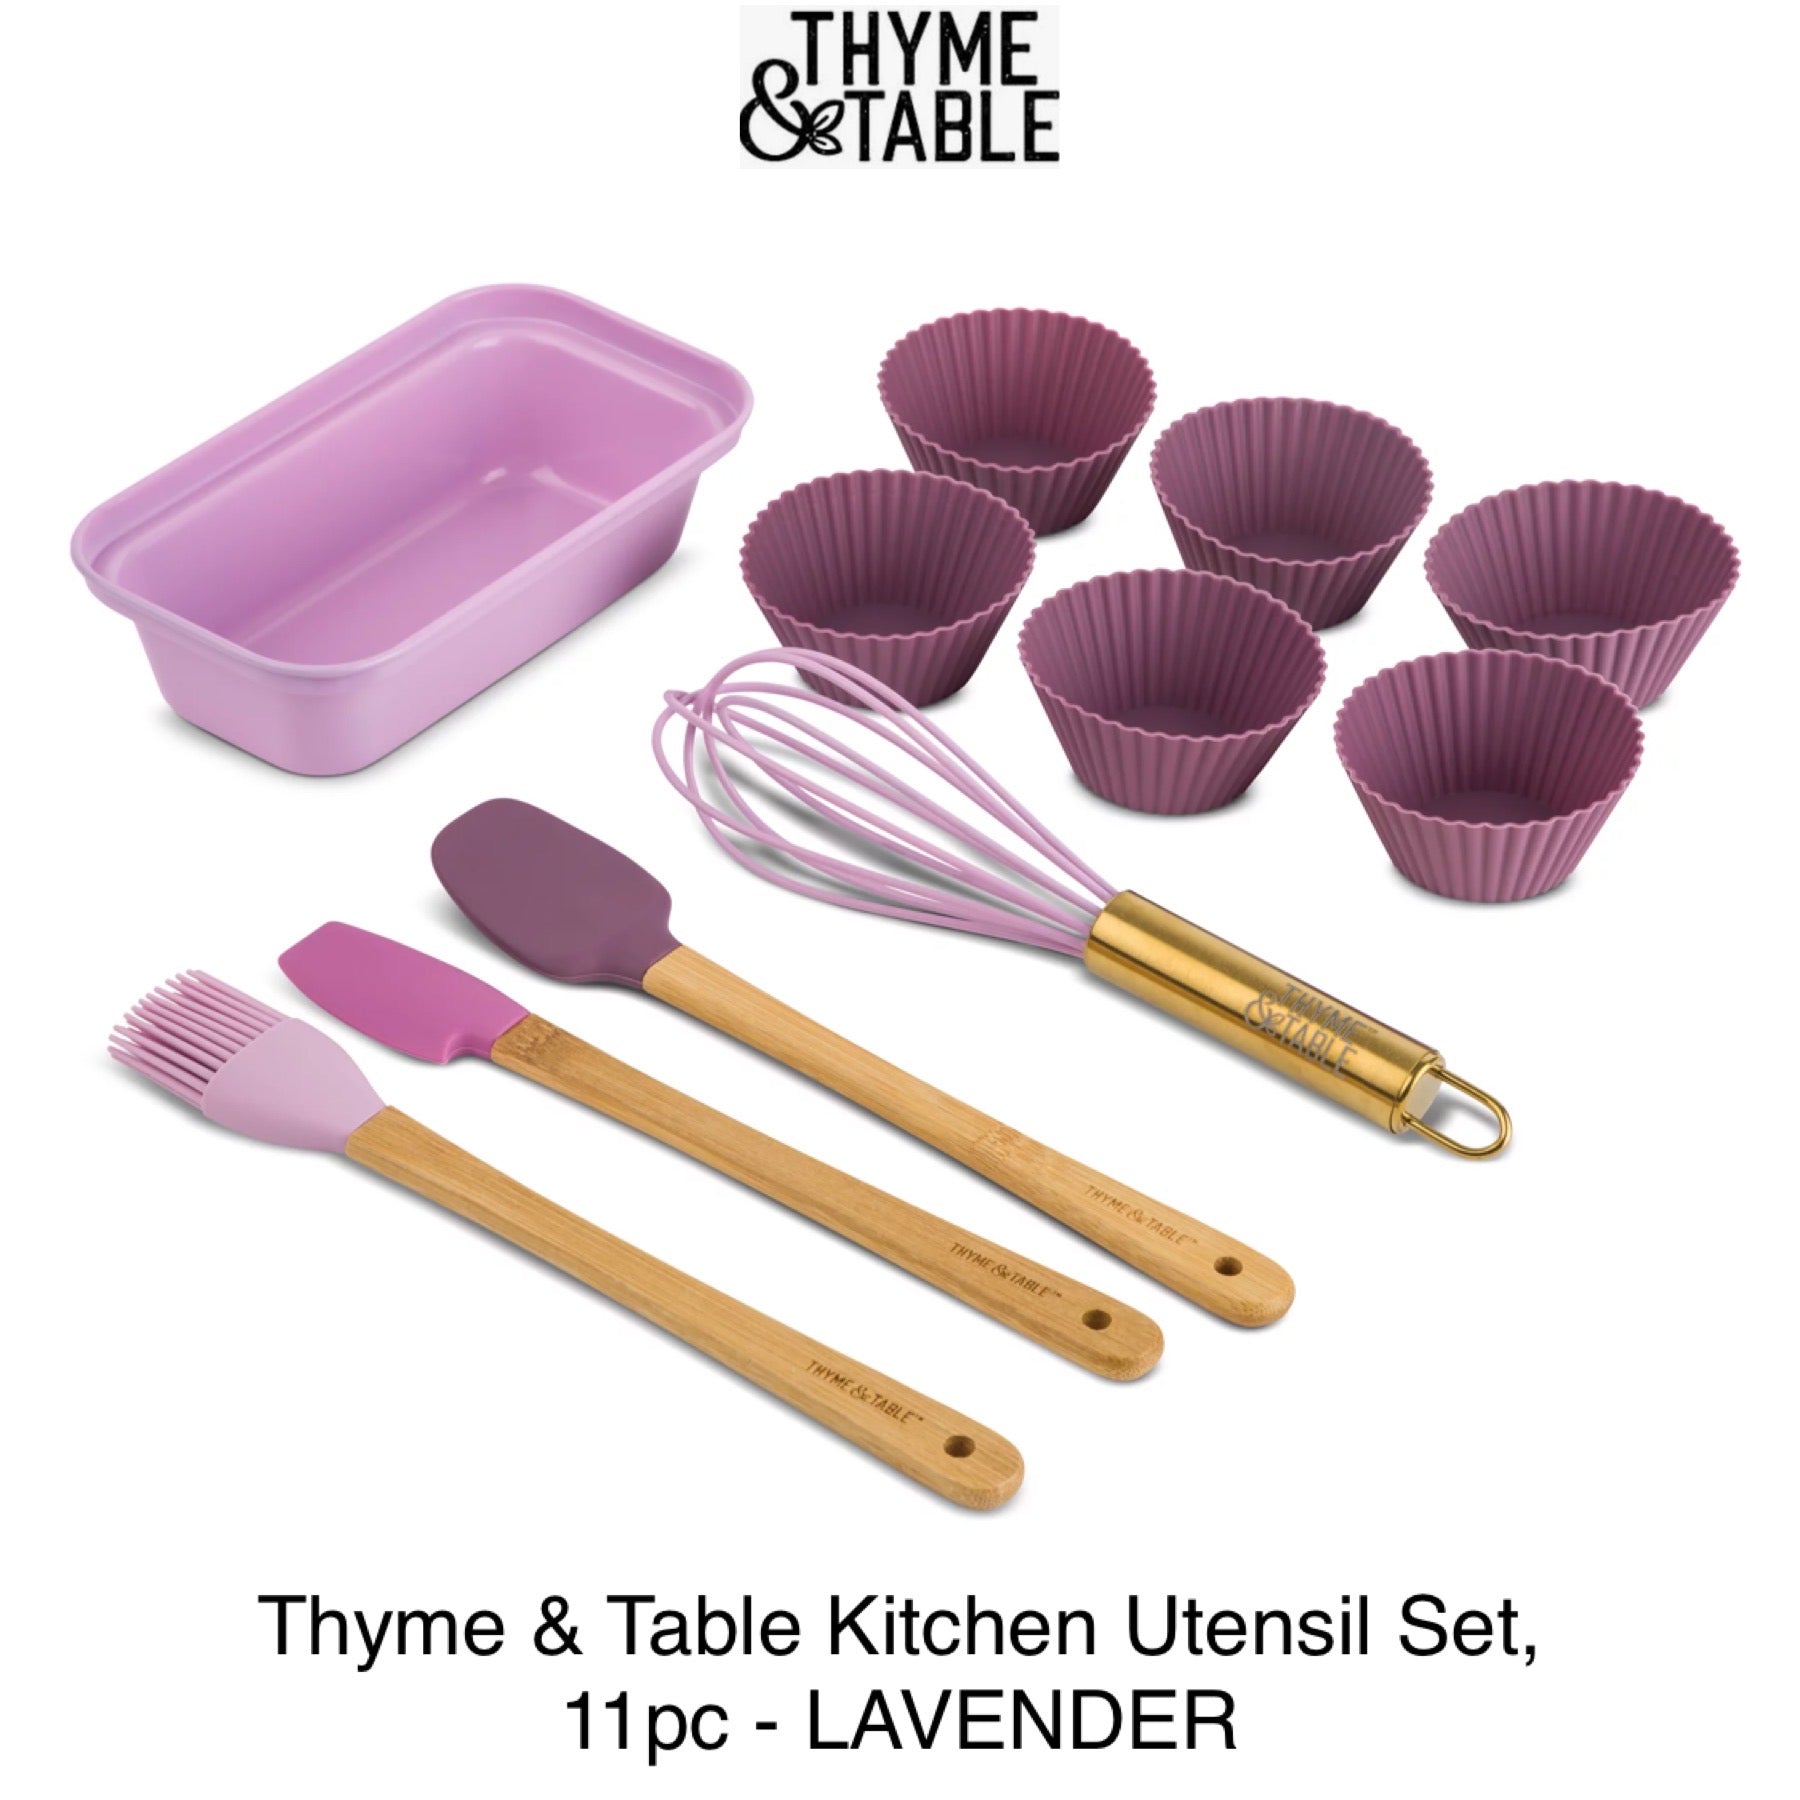 Thyme & Table Mini Kitchen Utensil Set with Whisk, Spatula, Mini